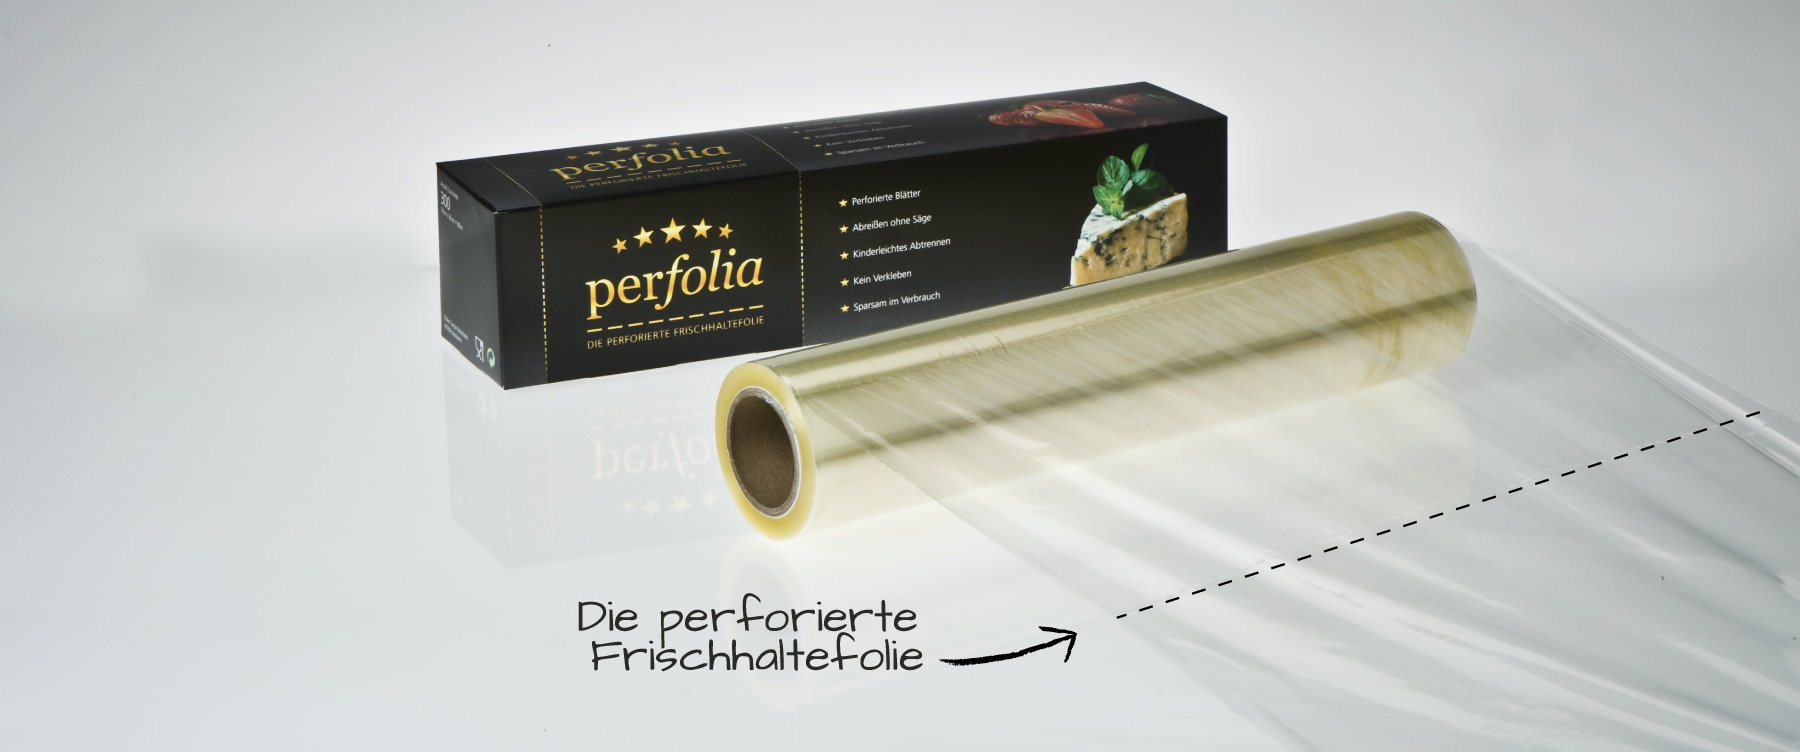 perfolia - die perforierte Frischhaltefolie